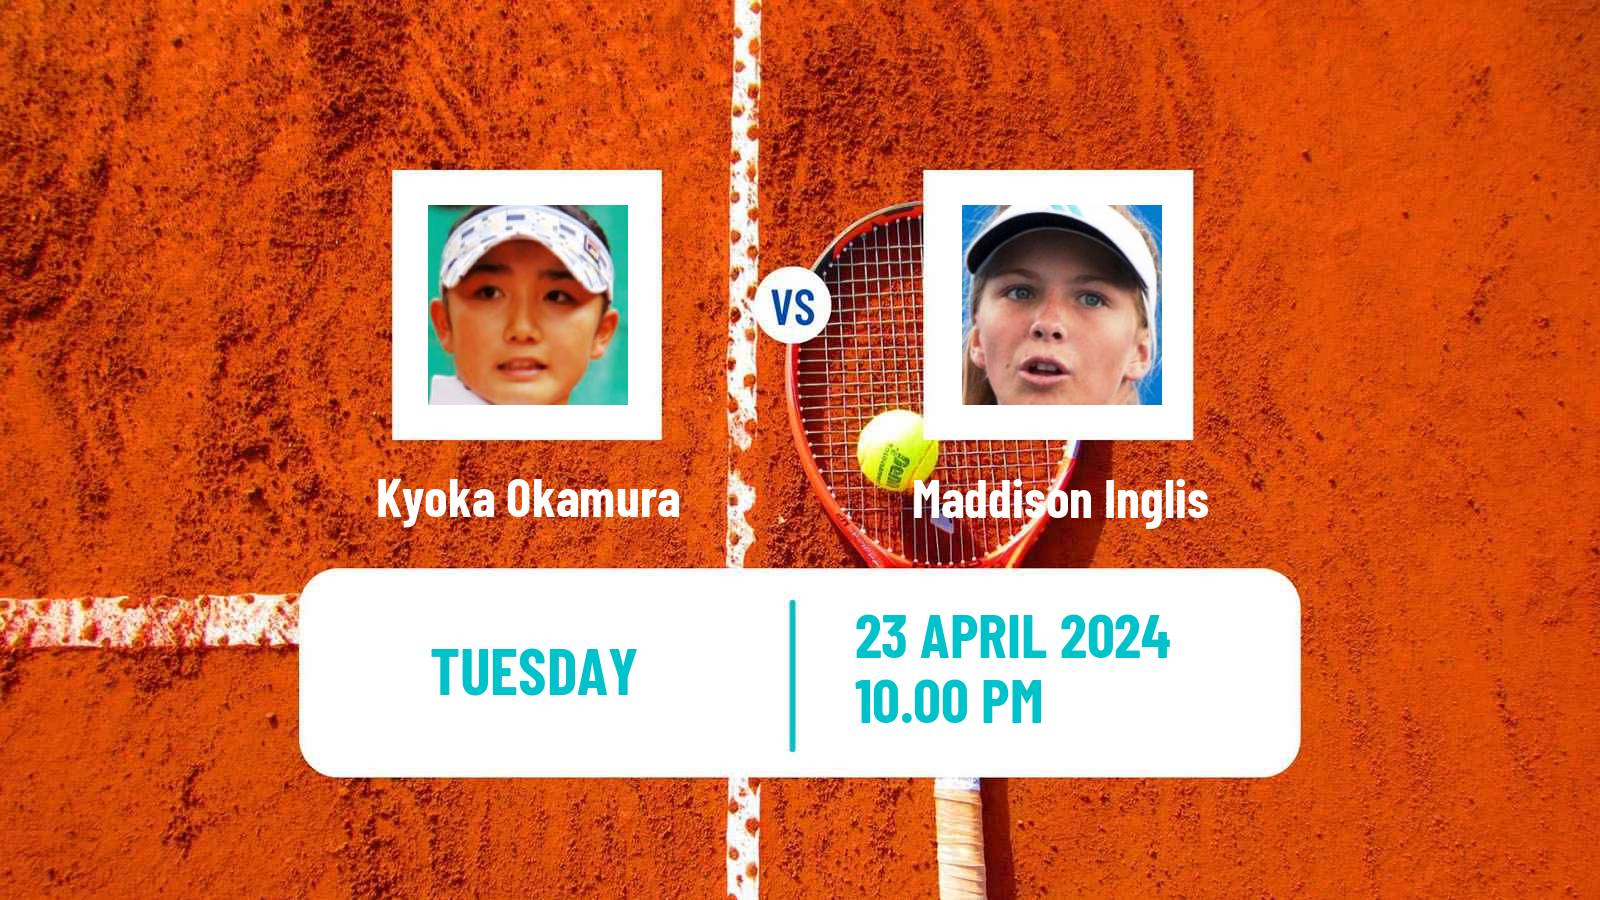 Tennis ITF W100 Tokyo Women Kyoka Okamura - Maddison Inglis